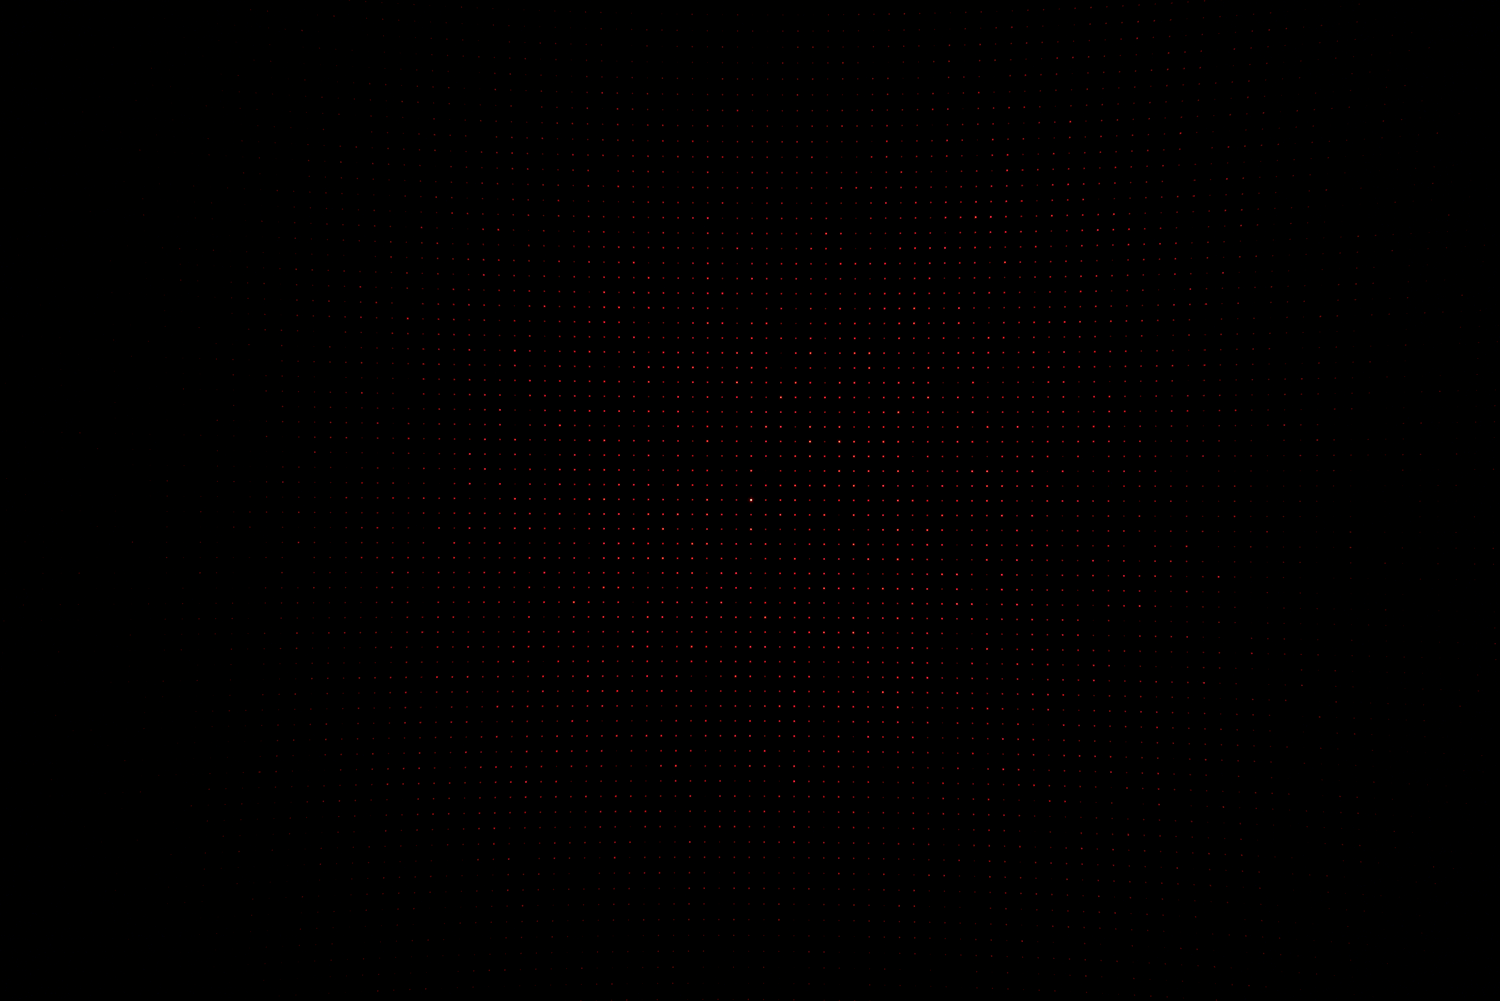 Laser grid